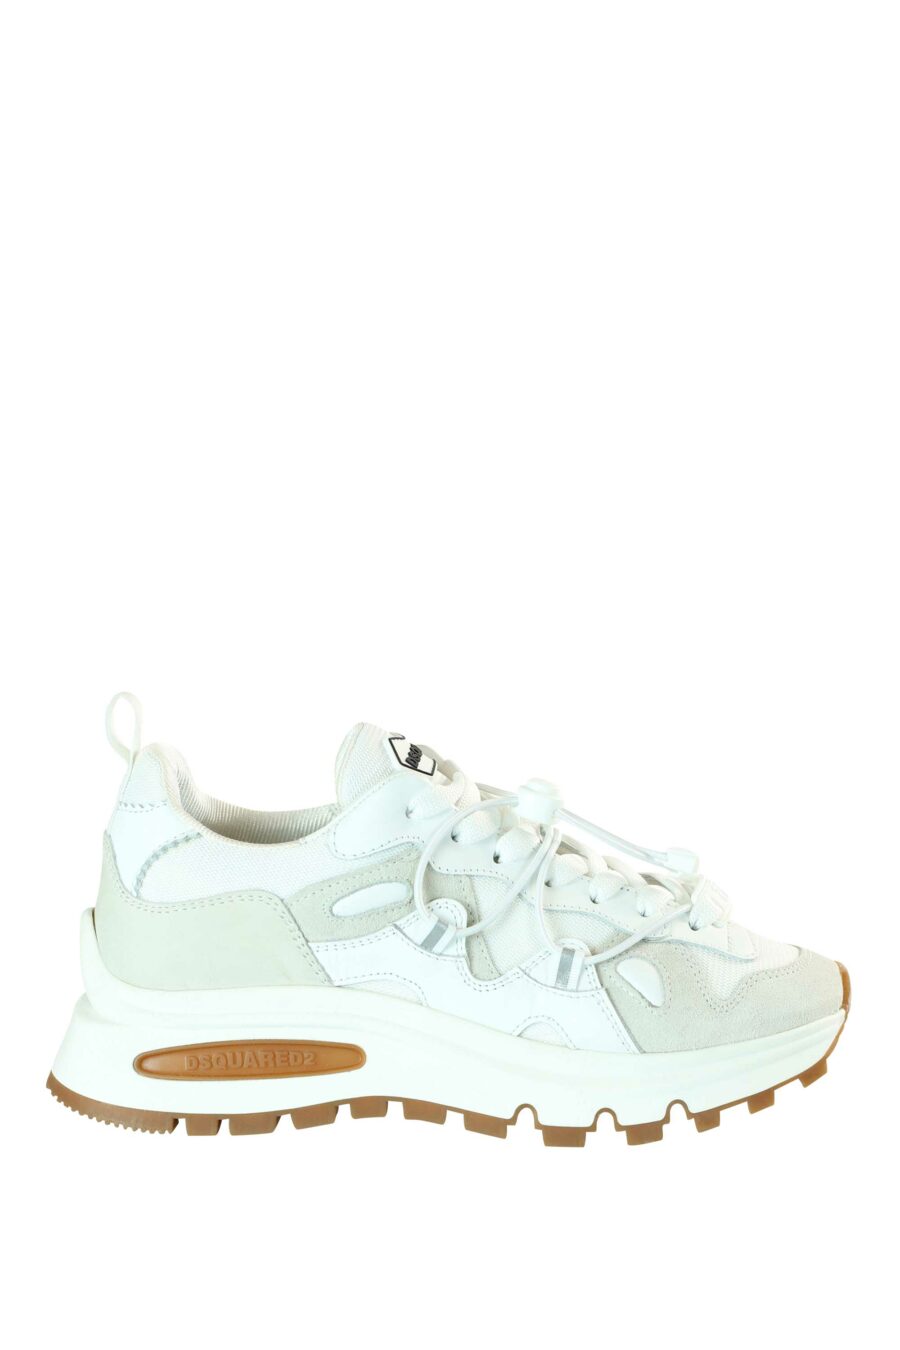 Zapatillas mix blanco con plataforma blanca y suela marrón - 8055777195864